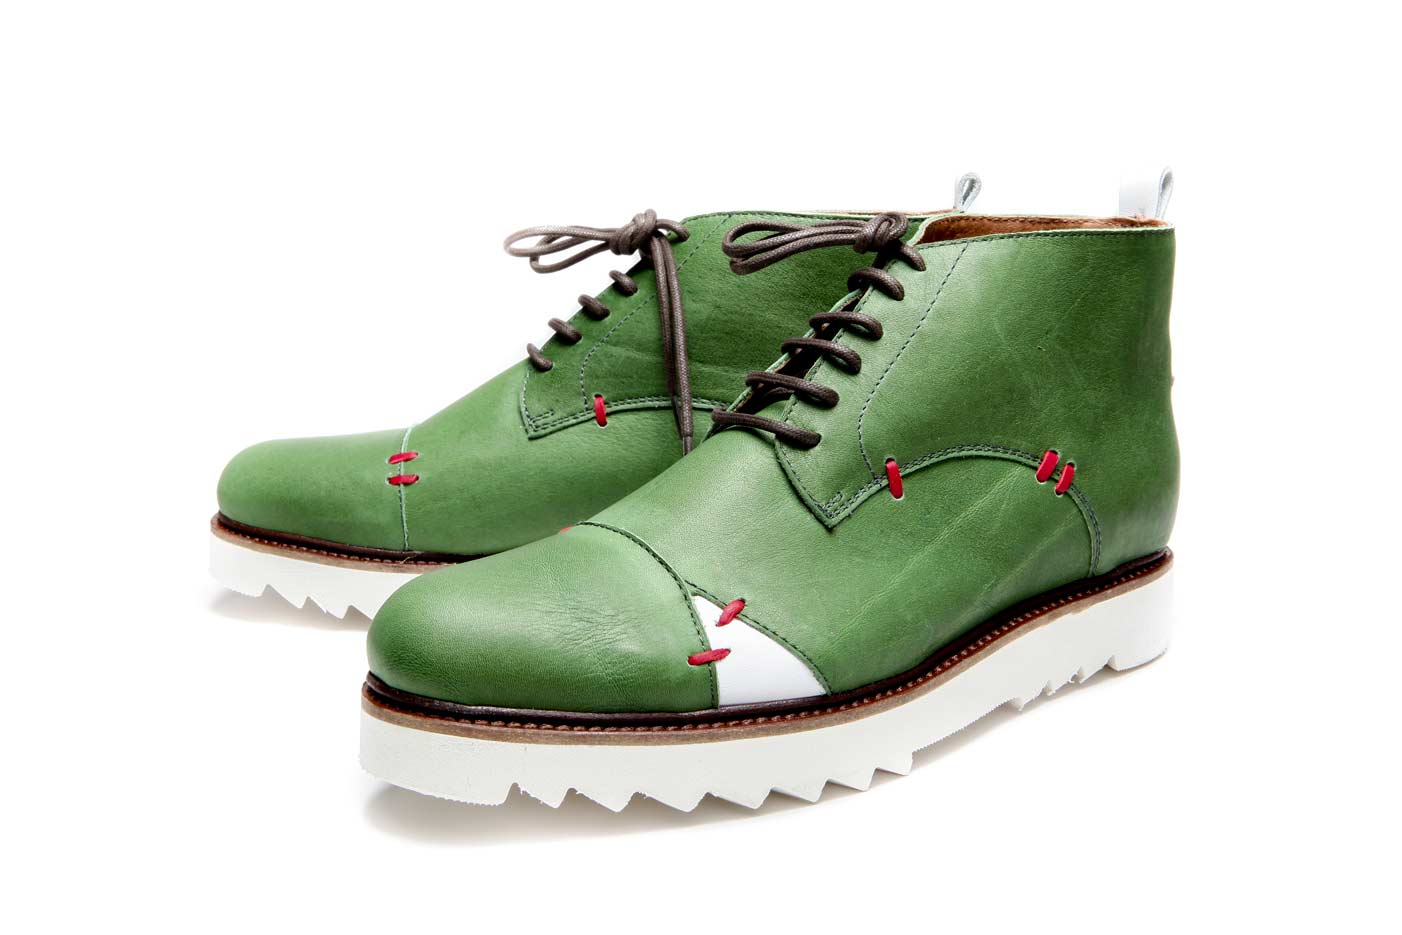 Спринг ботинки зеленые